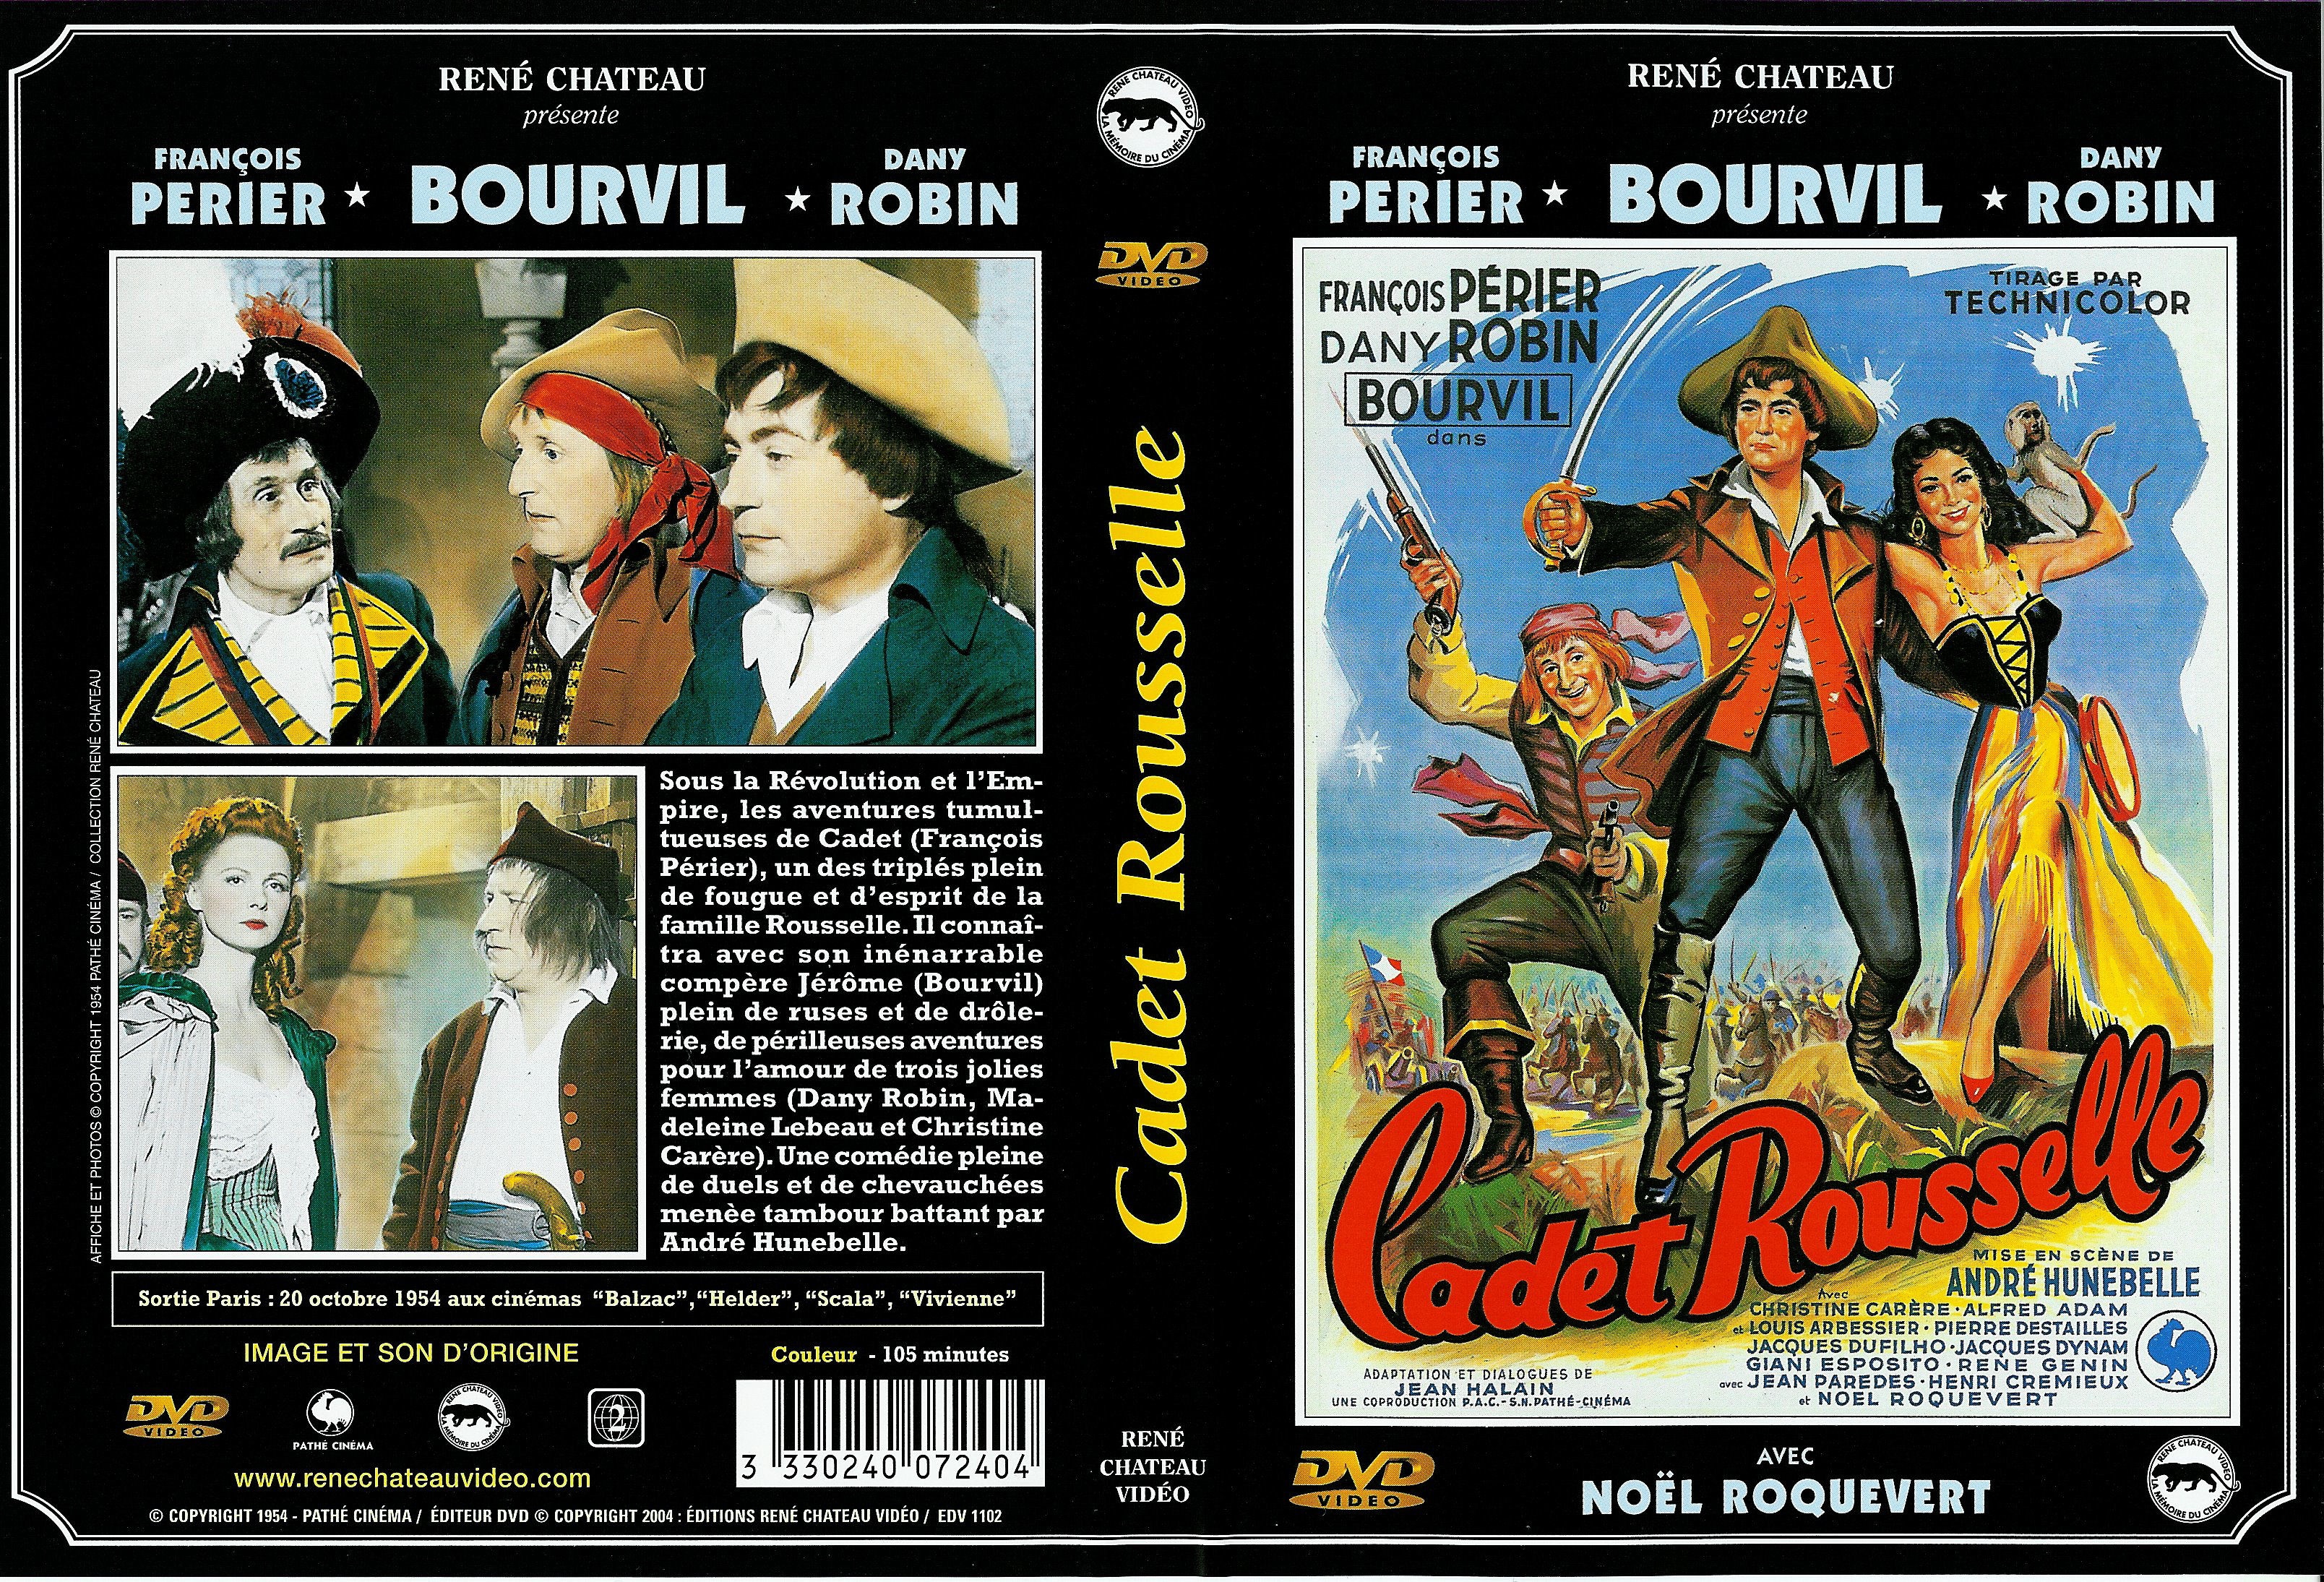 Jaquette DVD Cadet Rousselle